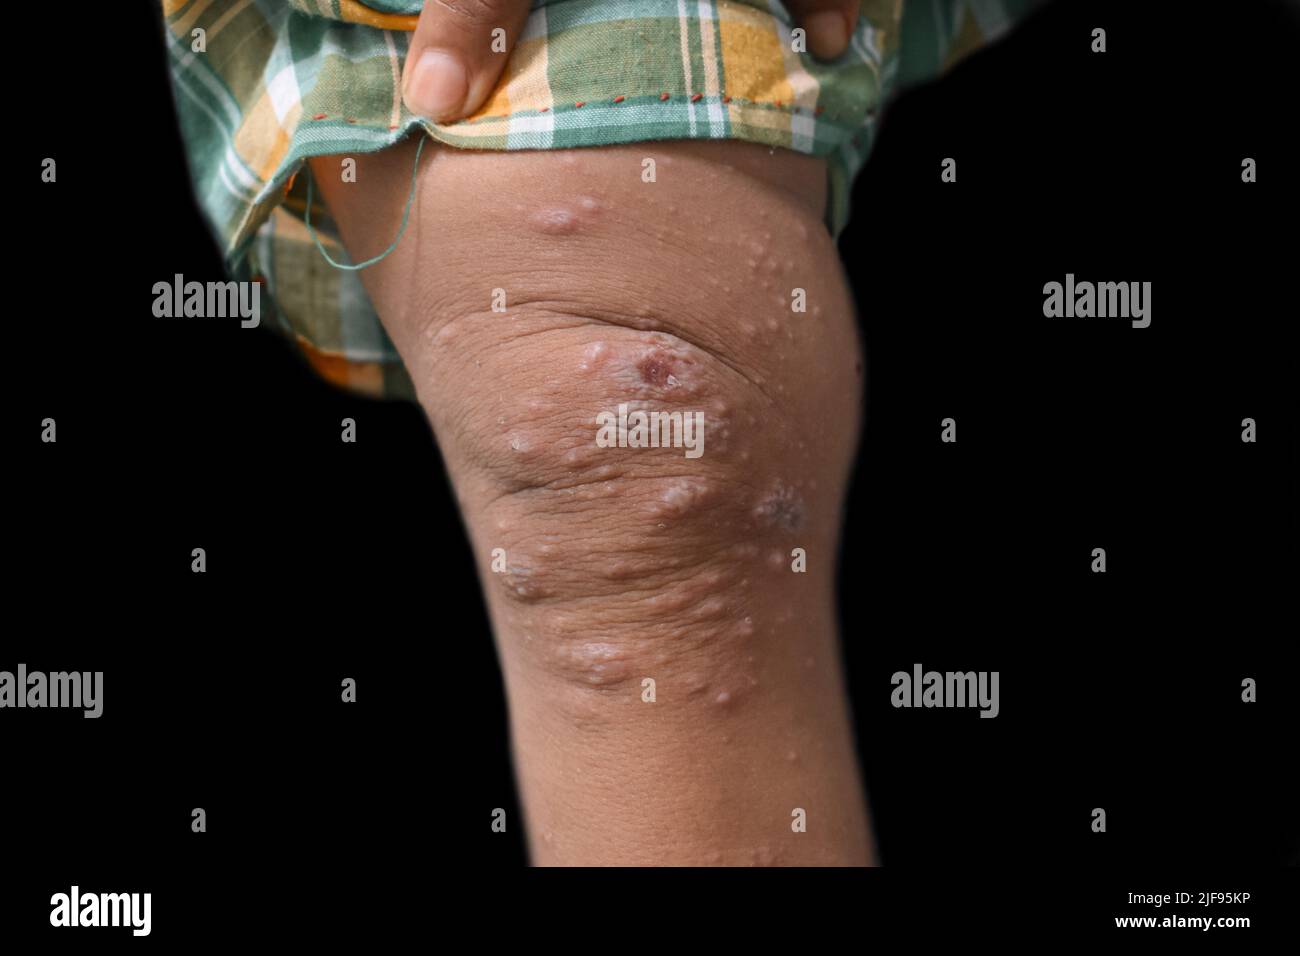 Krätze Befall mit sekundären oder überlagerten bakteriellen Infektionen und Pusteln in Bein von südostasiatischen, birmanischen Kind. Stockfoto